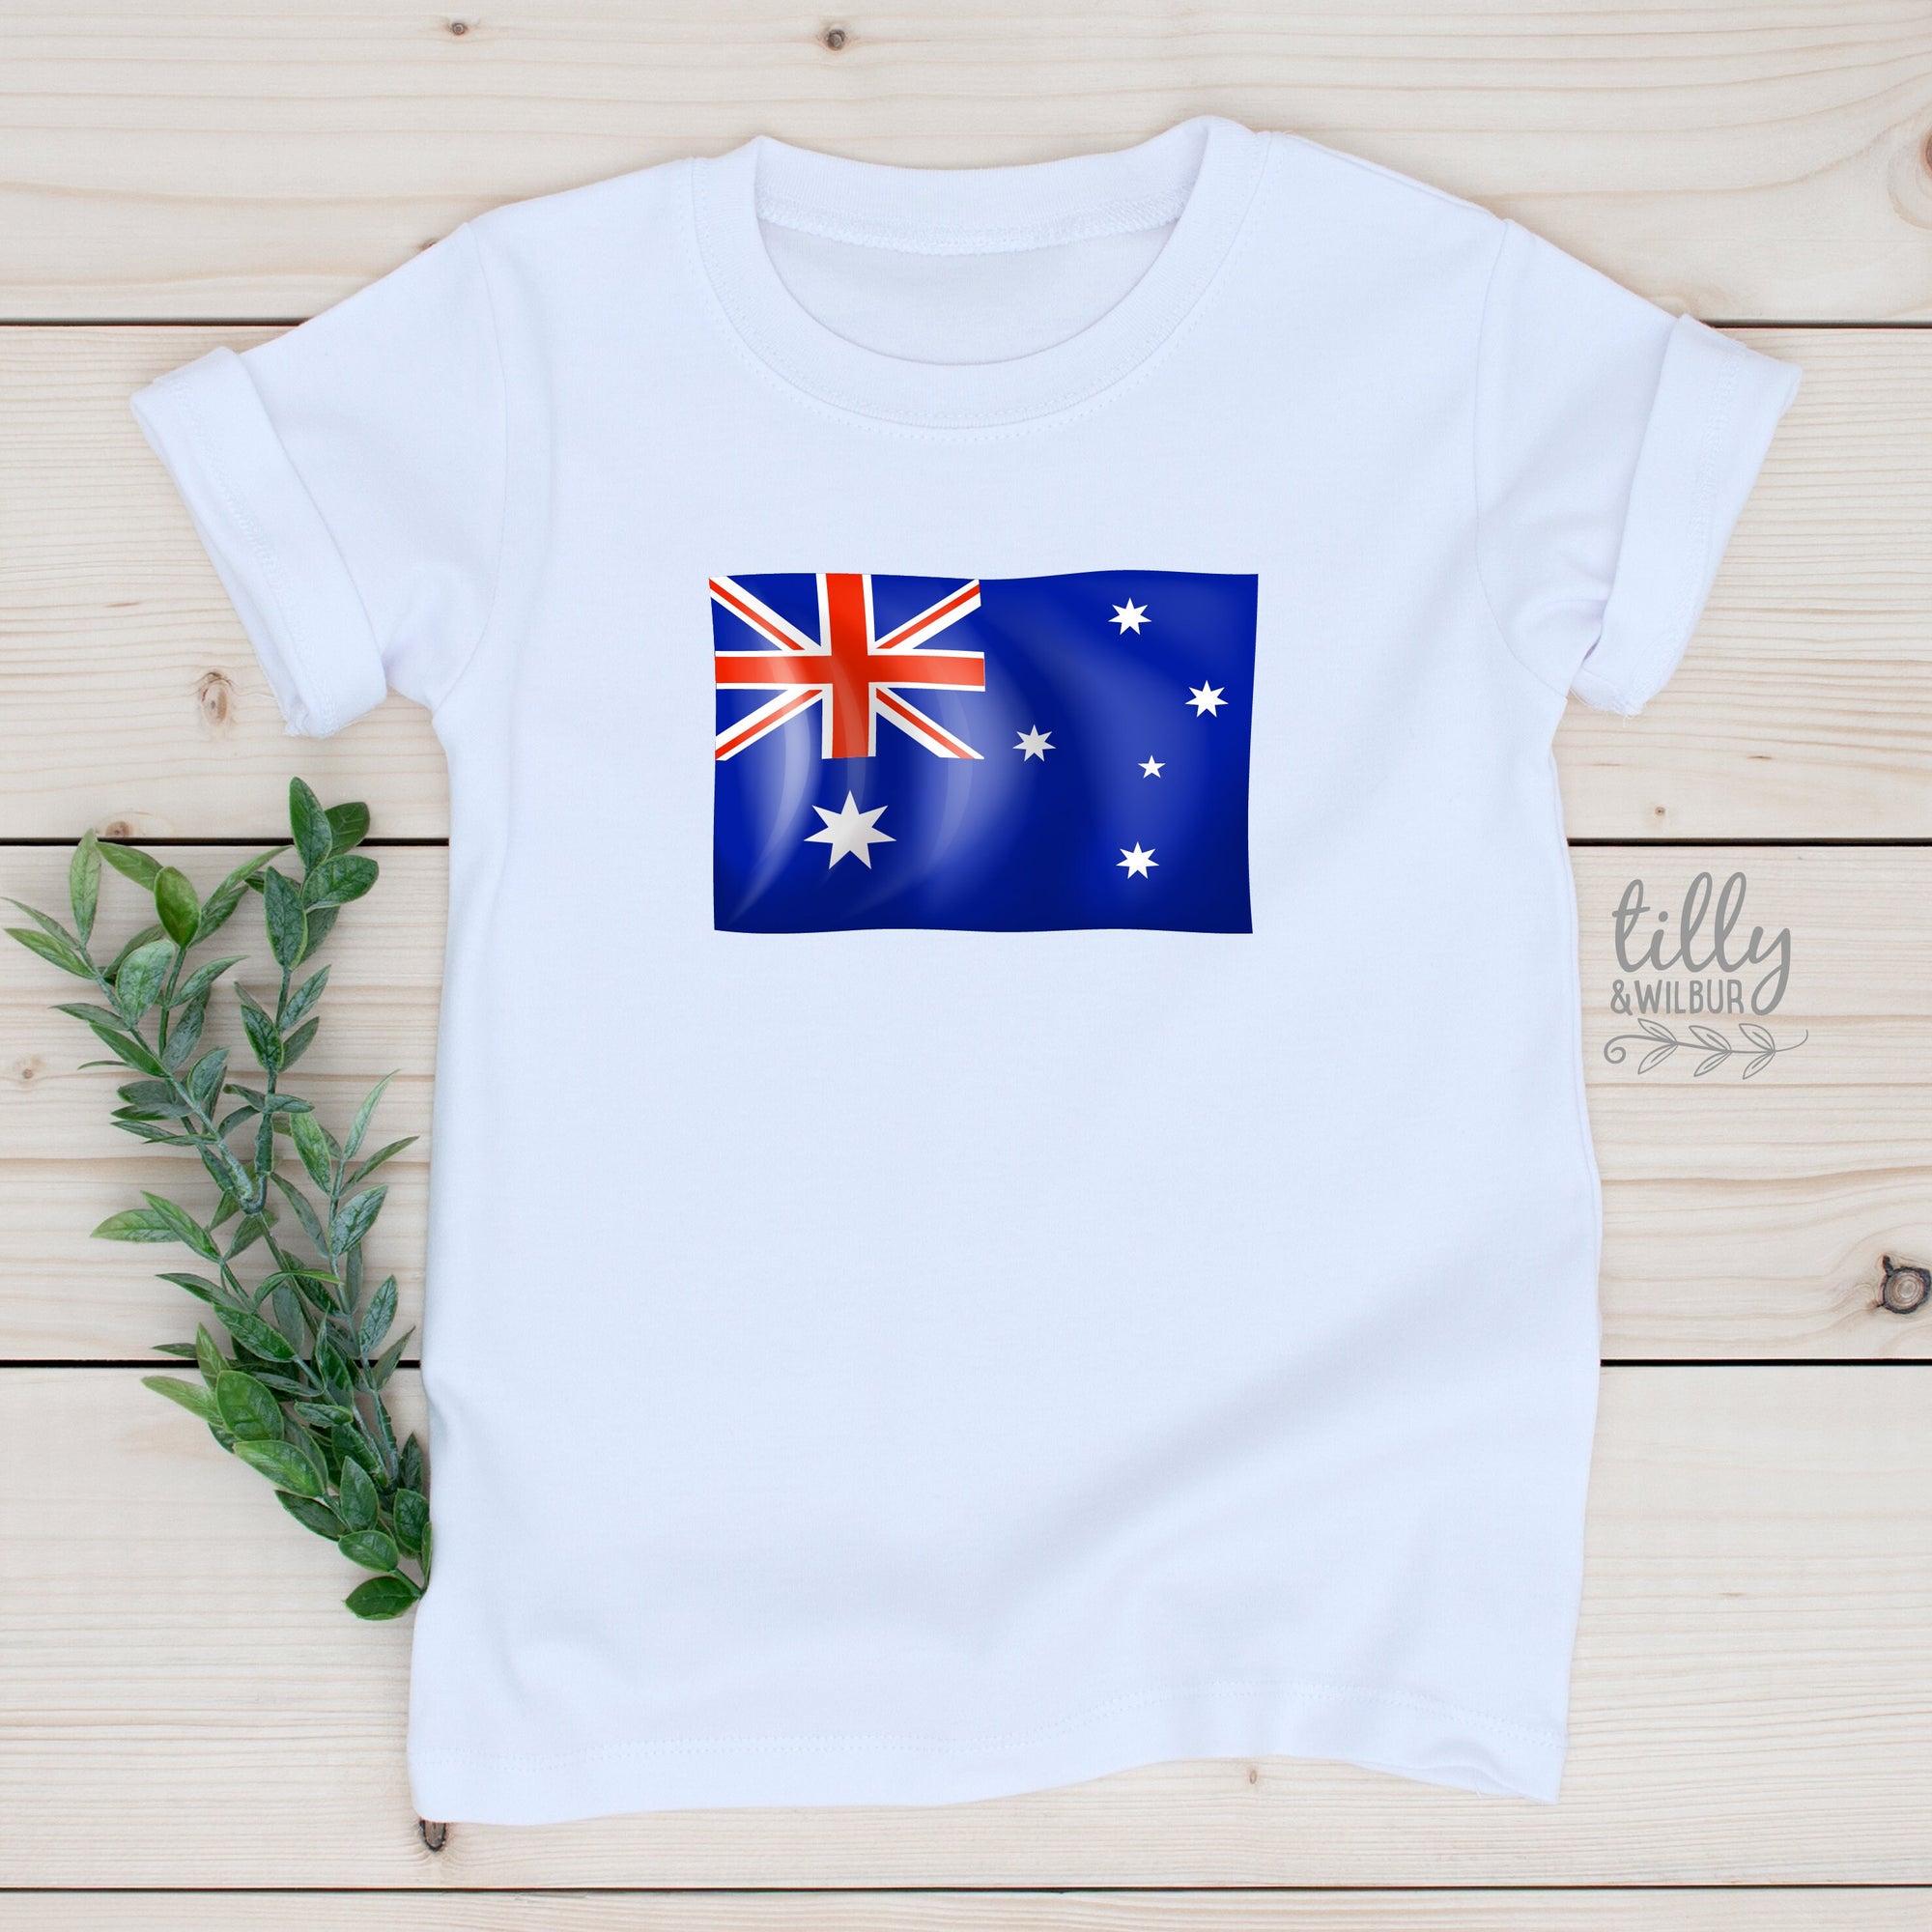 Australia Day Kids T-Shirt, Australia Day T-Shirt, Aussie Aussie Aussie, Australia Day Kids Tee, Kids Australia Day Gift, Australian Flag